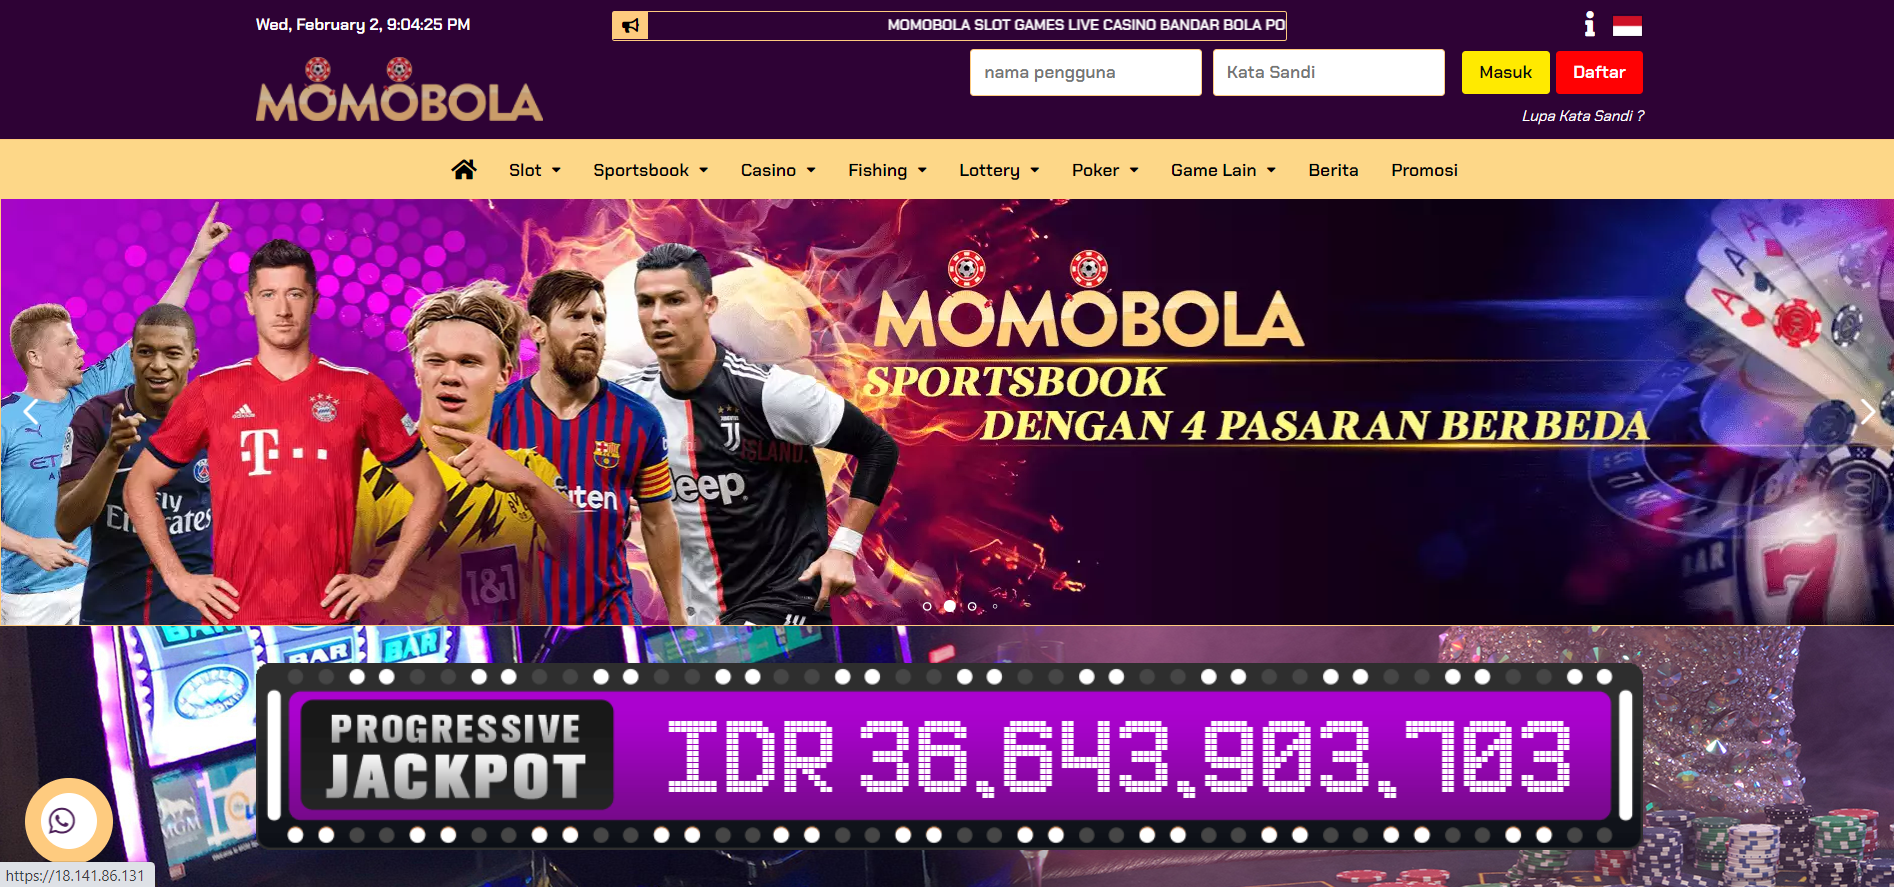 MOMOBOLA - Situs Slot, Dan Situs Sportsbook Terpercaya